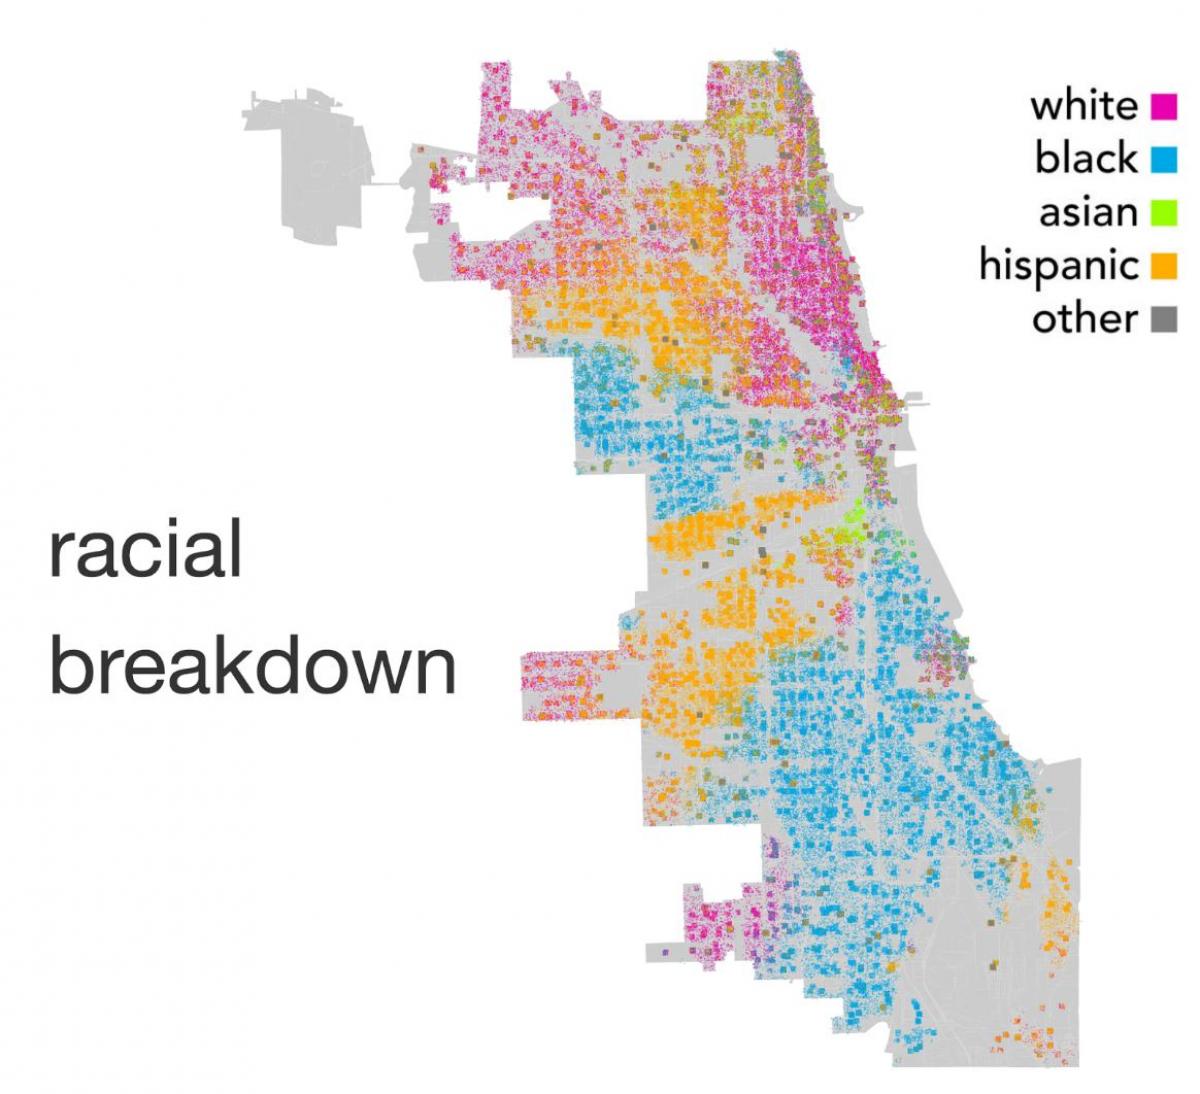 kort over Chicago etnicitet